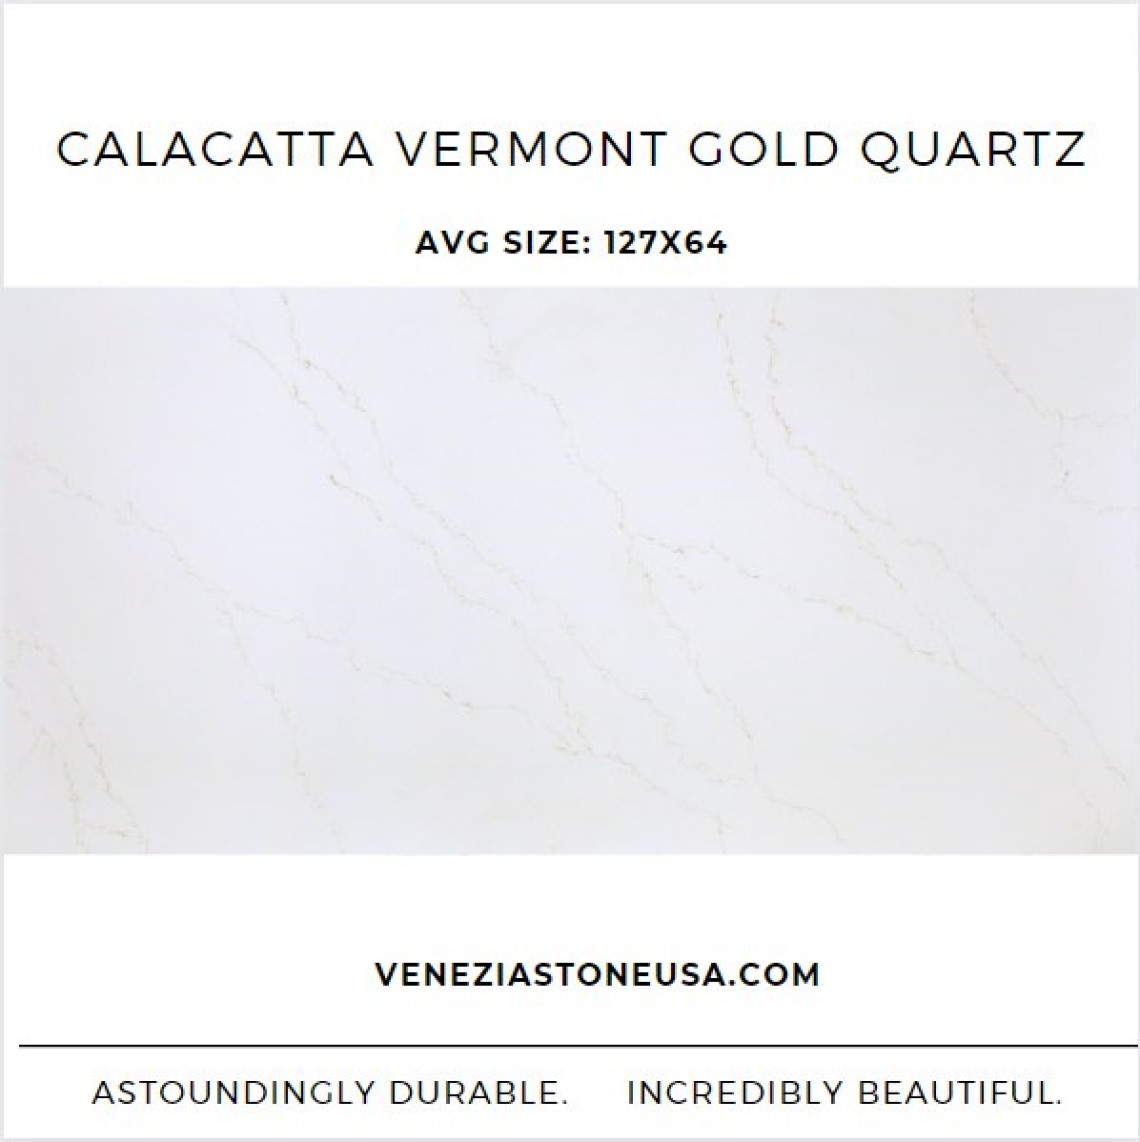 Calacatta Vermont Gold Quartz